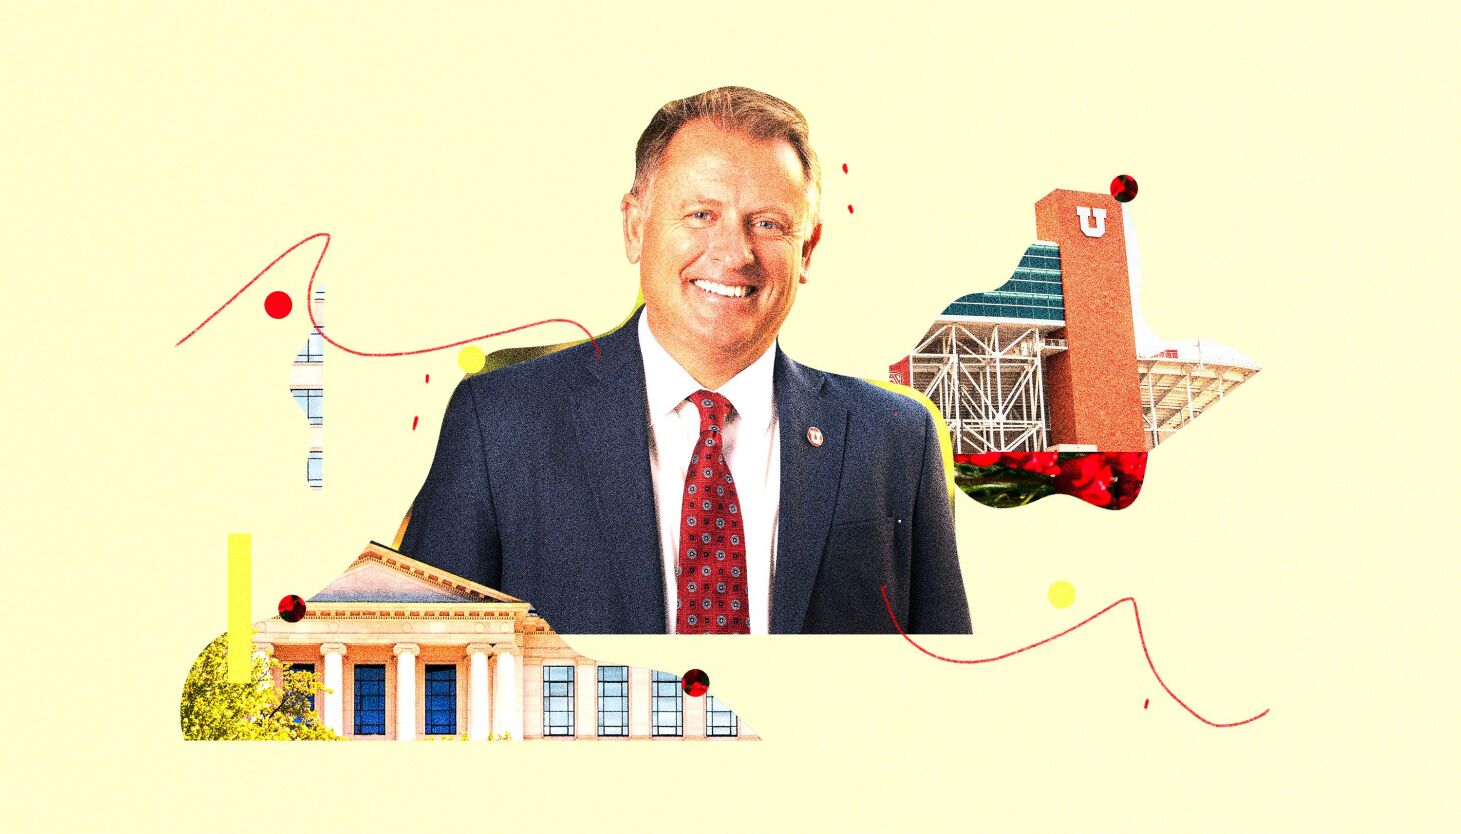  University of Utah president gives back to school tips 